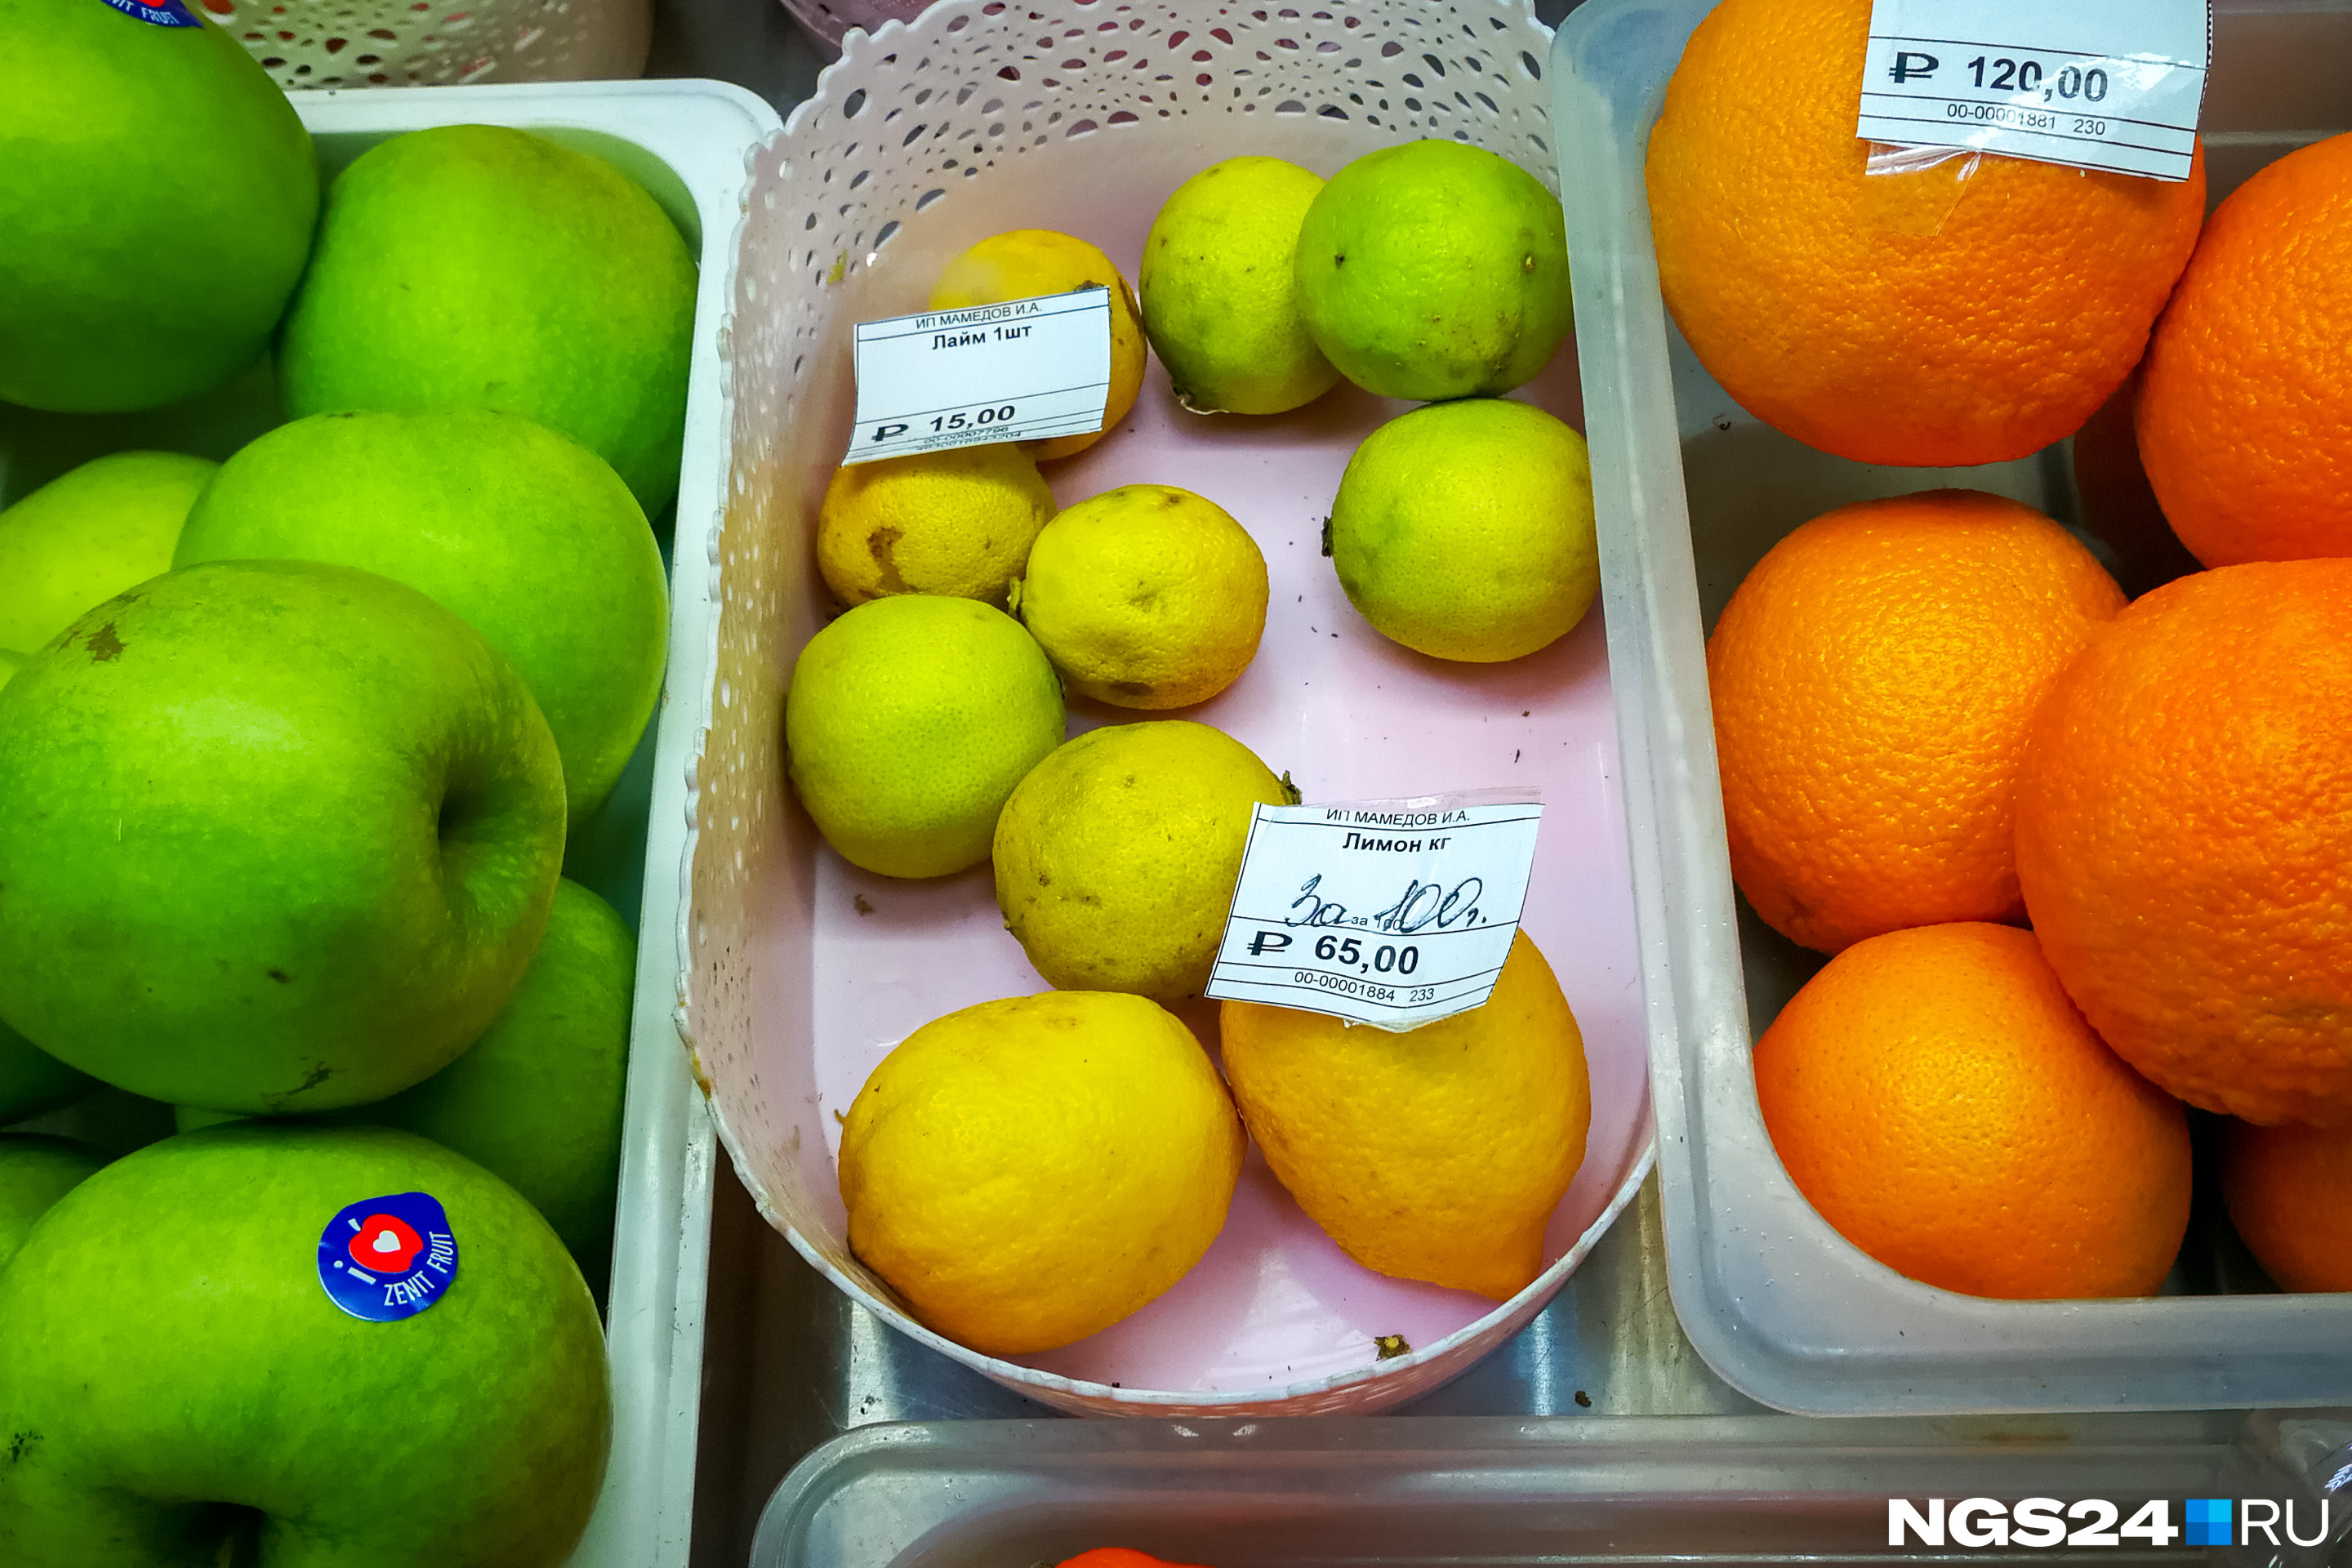 Доживающие свой срок лимоны в магазинчике продуктов ИП «Мамедов» («Южный берег»)